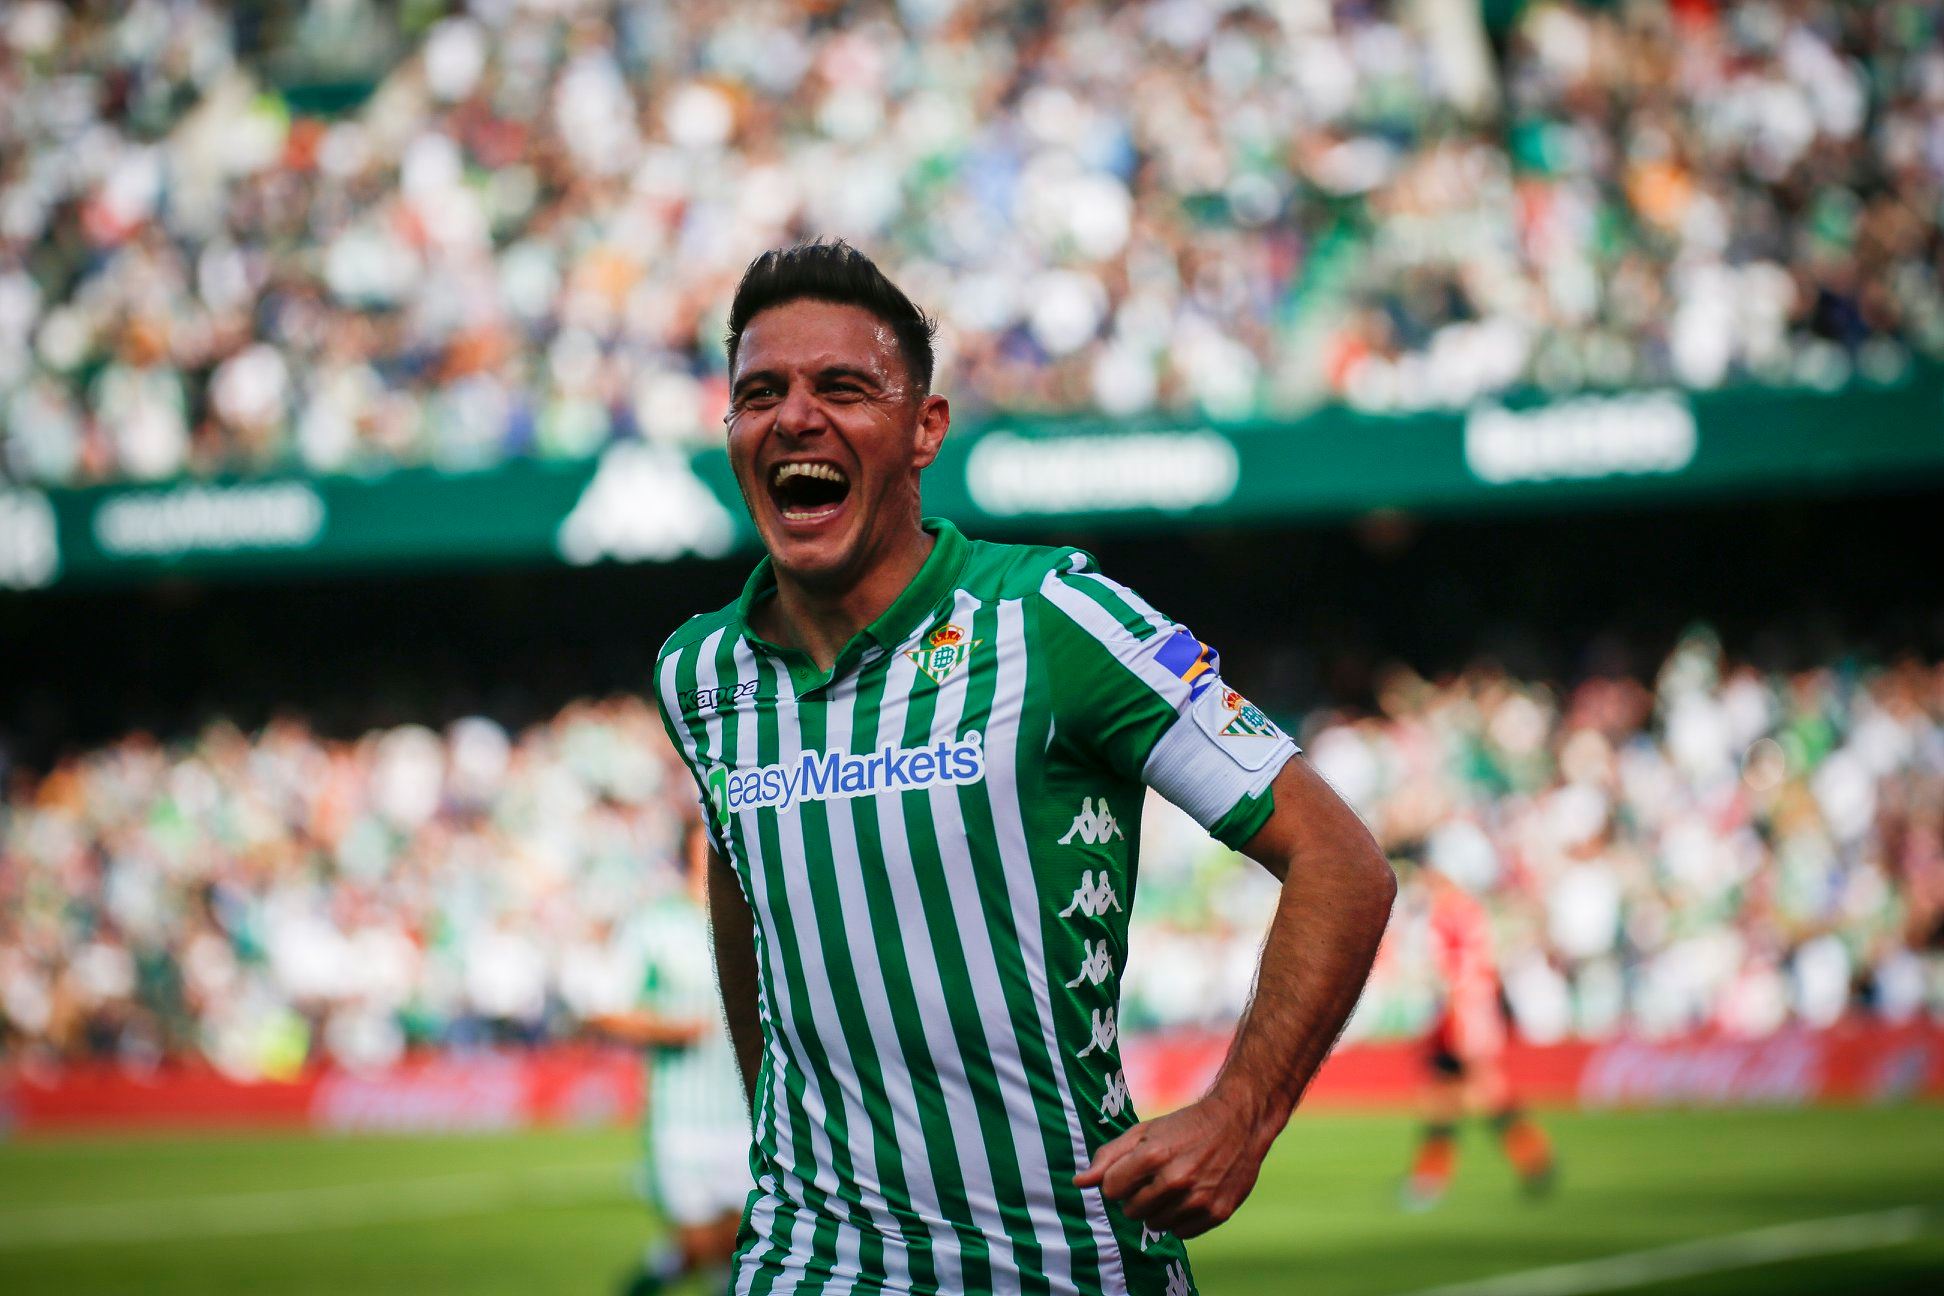 FECHADO - Grande ídolo do Real Betis, Joaquín Sánchez anunciou sua aposentadoria do futebol. O capitão defendeu as cores do clube por 14 temporadas